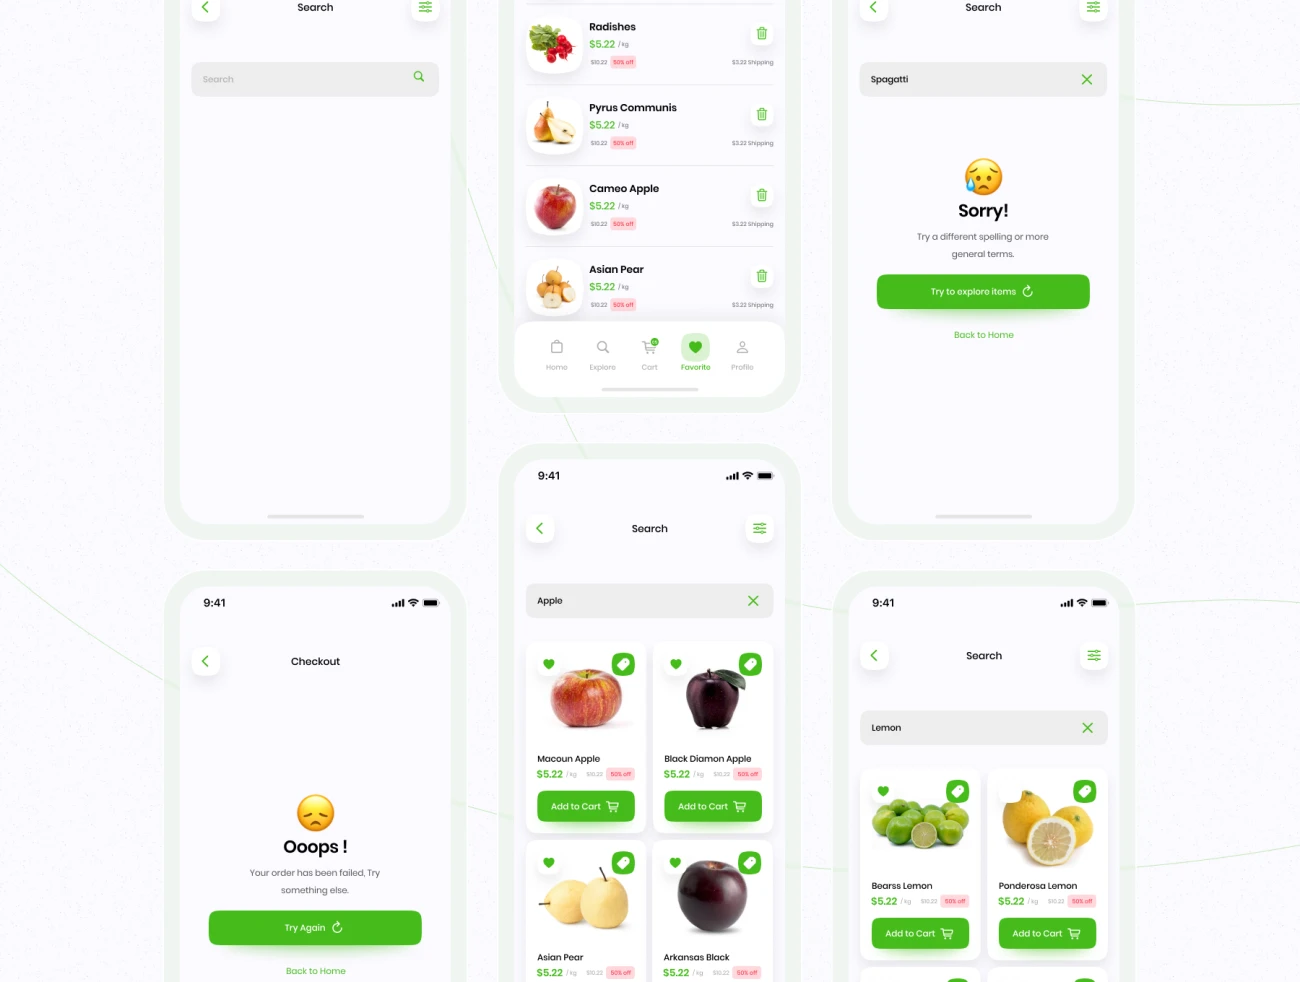 43屏生鲜蔬菜生活用品采购应用设计套件 Healthy Mart - Grocery App UI Kit-UI/UX、ui套件、主页、卡片式、应用、支付、注册、登录页、网购、详情、预订-到位啦UI